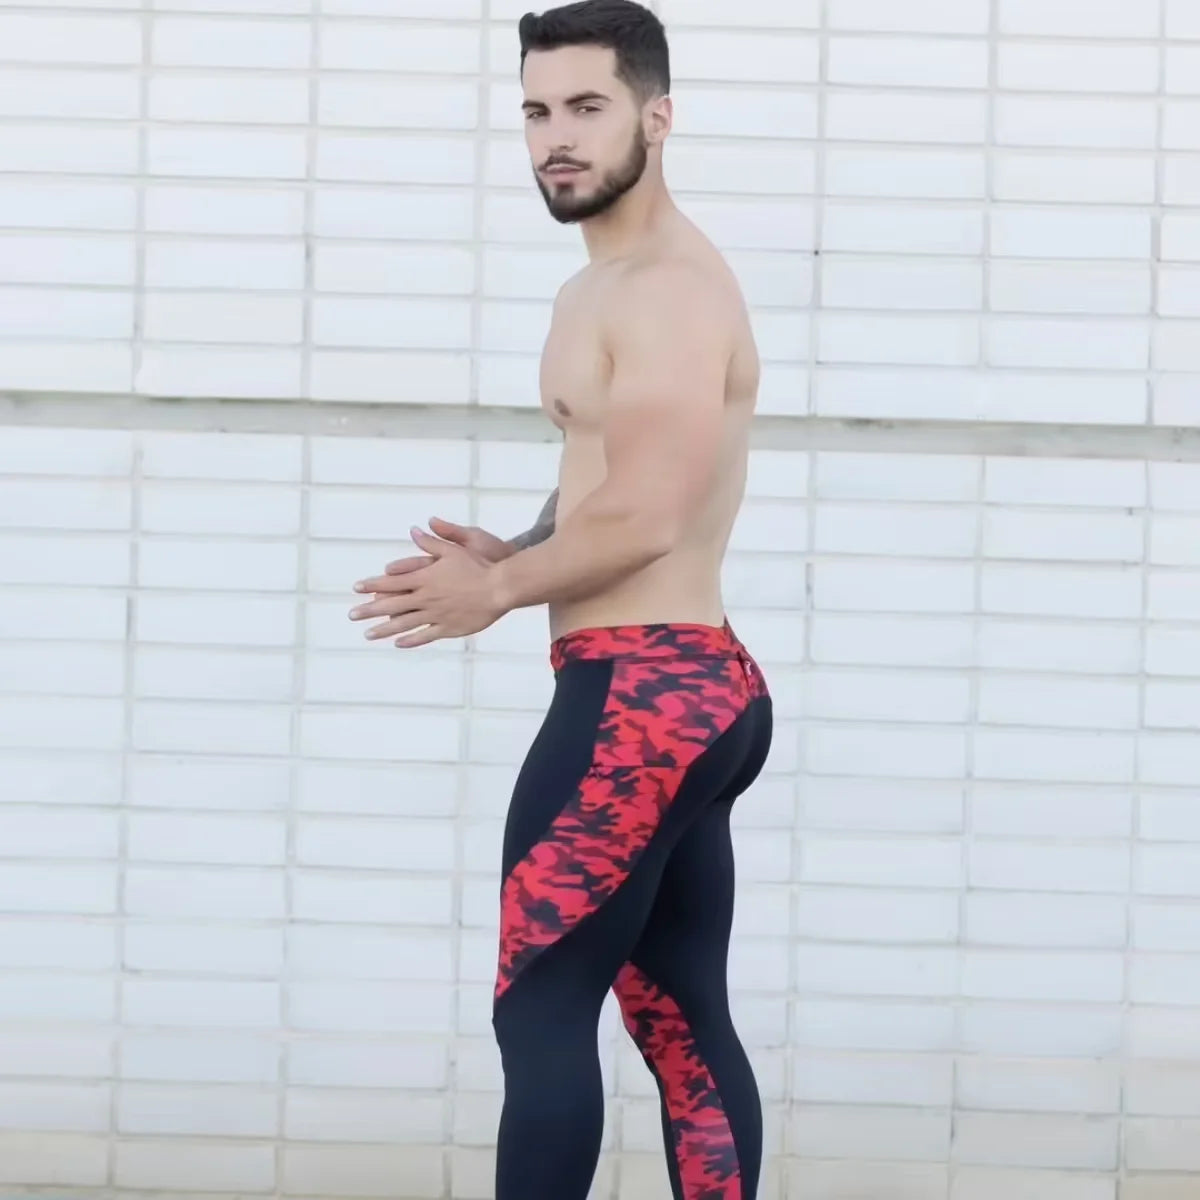 Yoga Leggings for Men: A Trend on the Rise